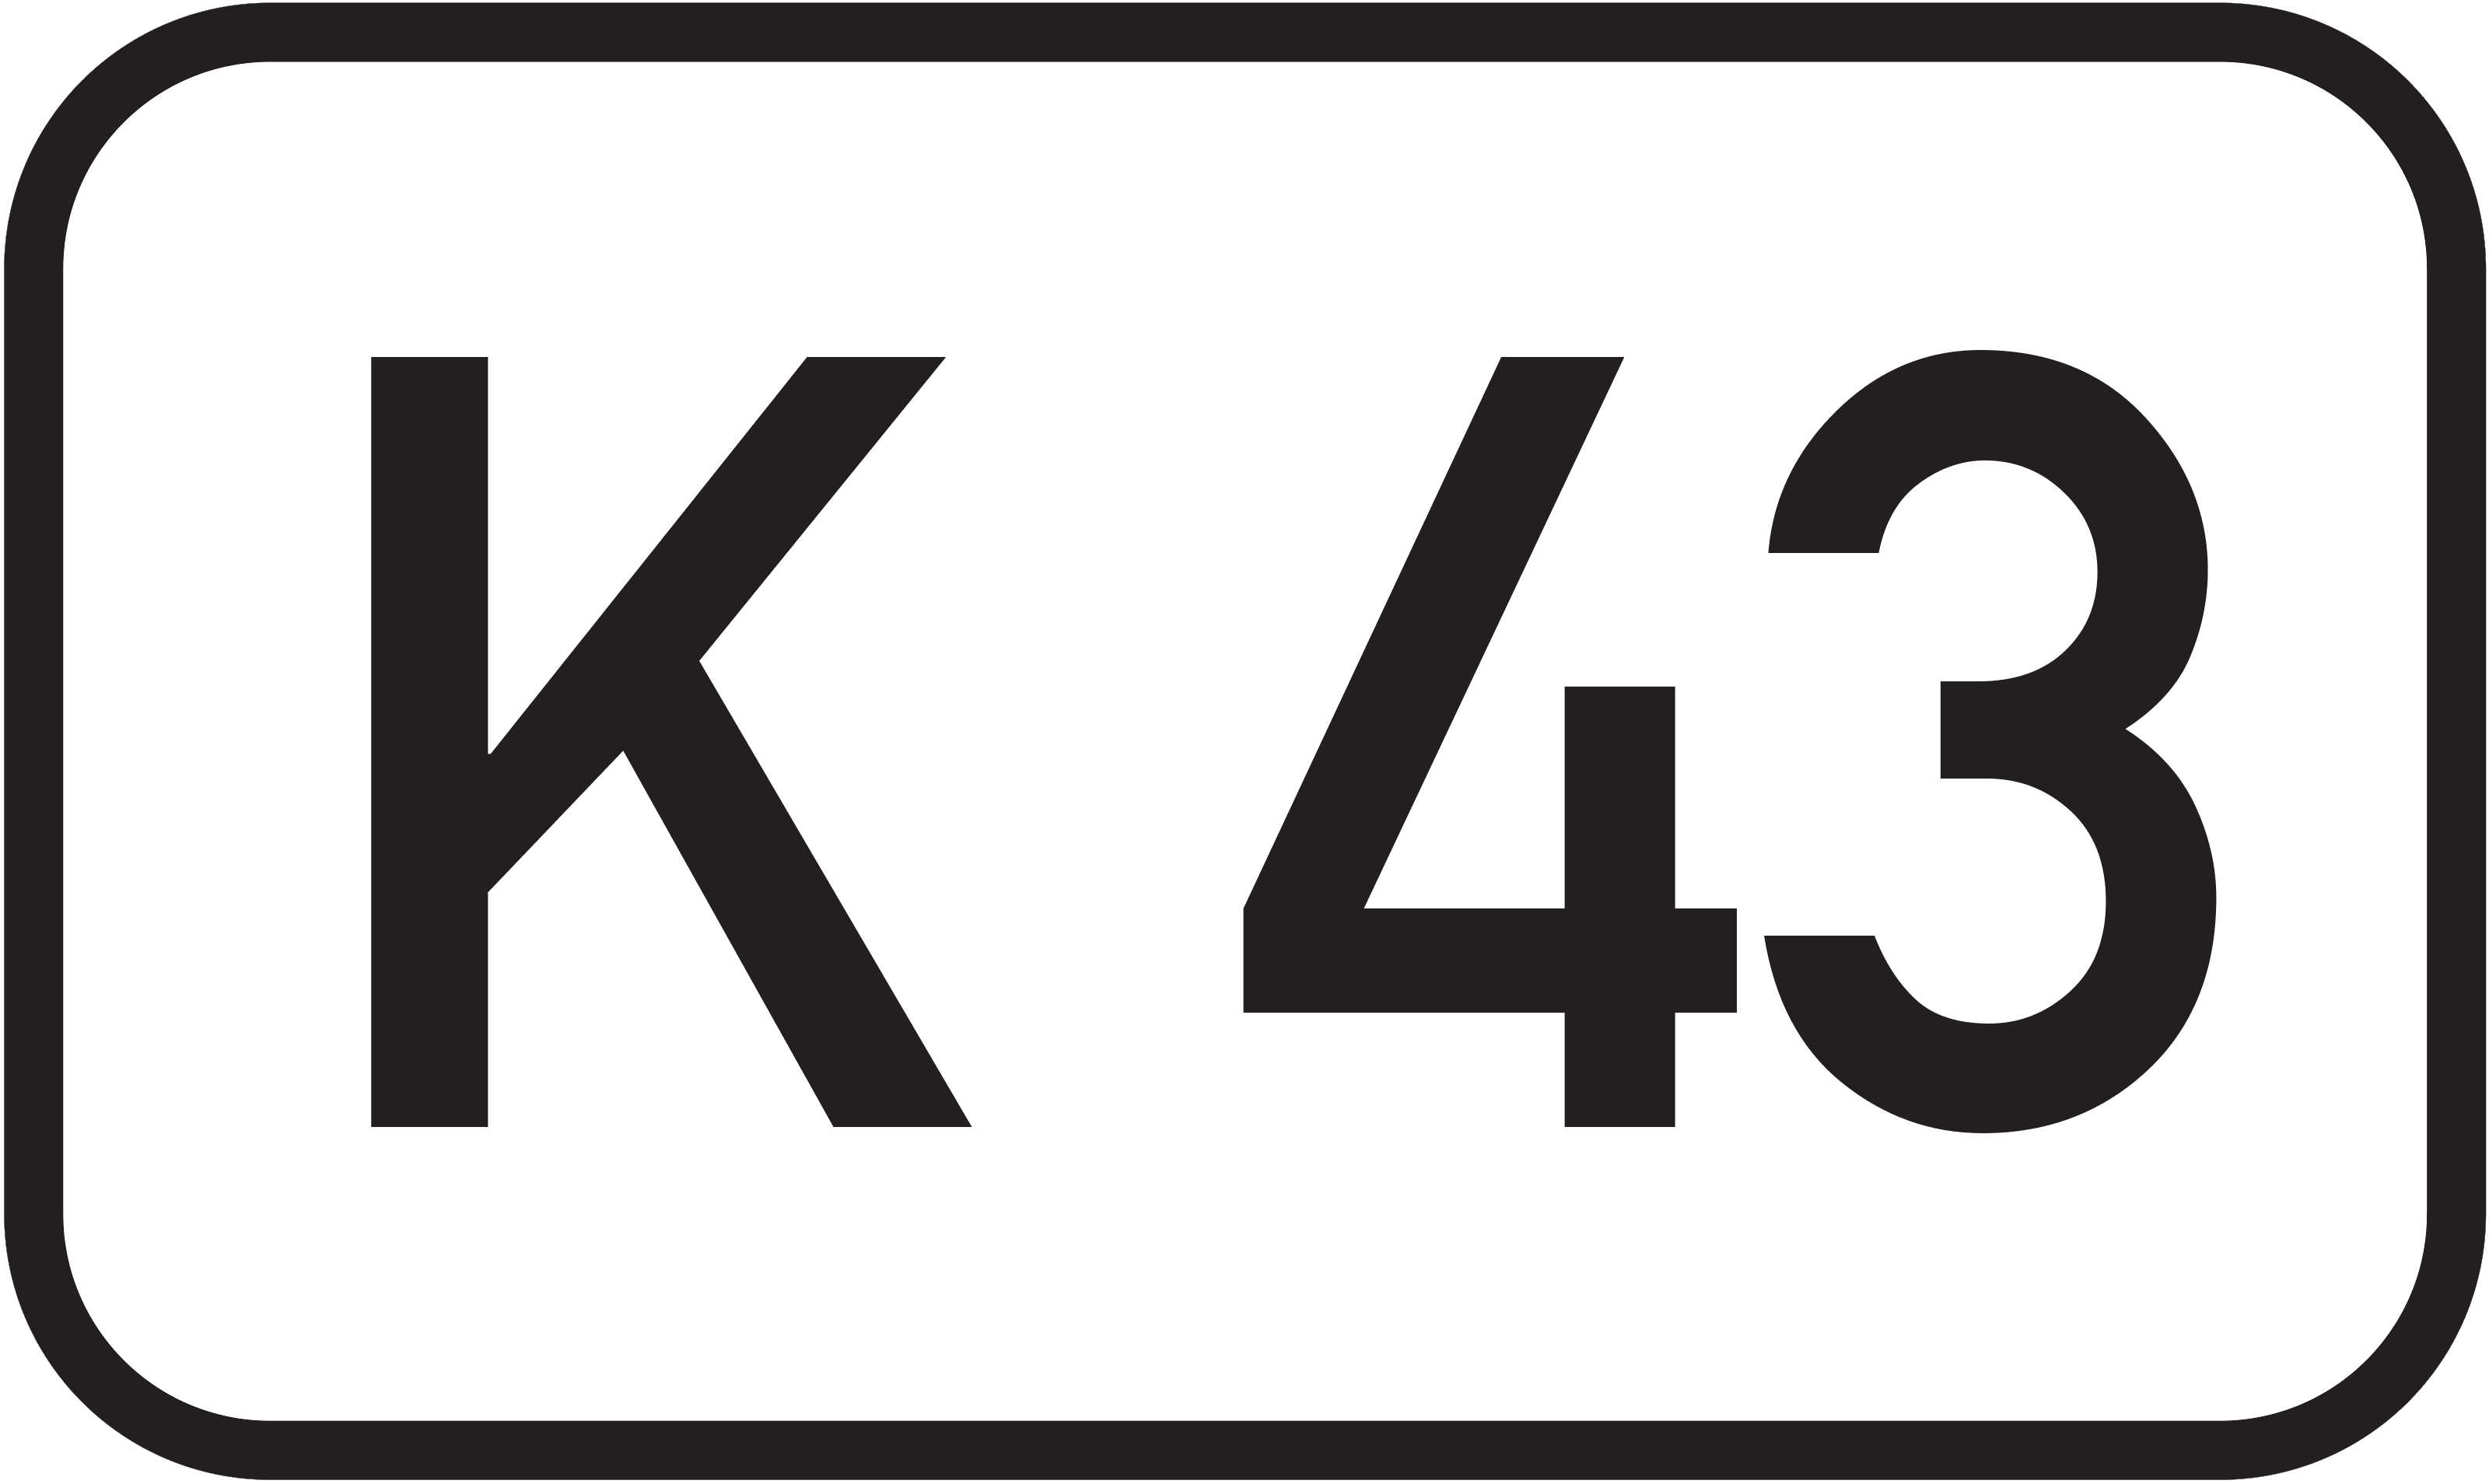 Kreisstraße K 43